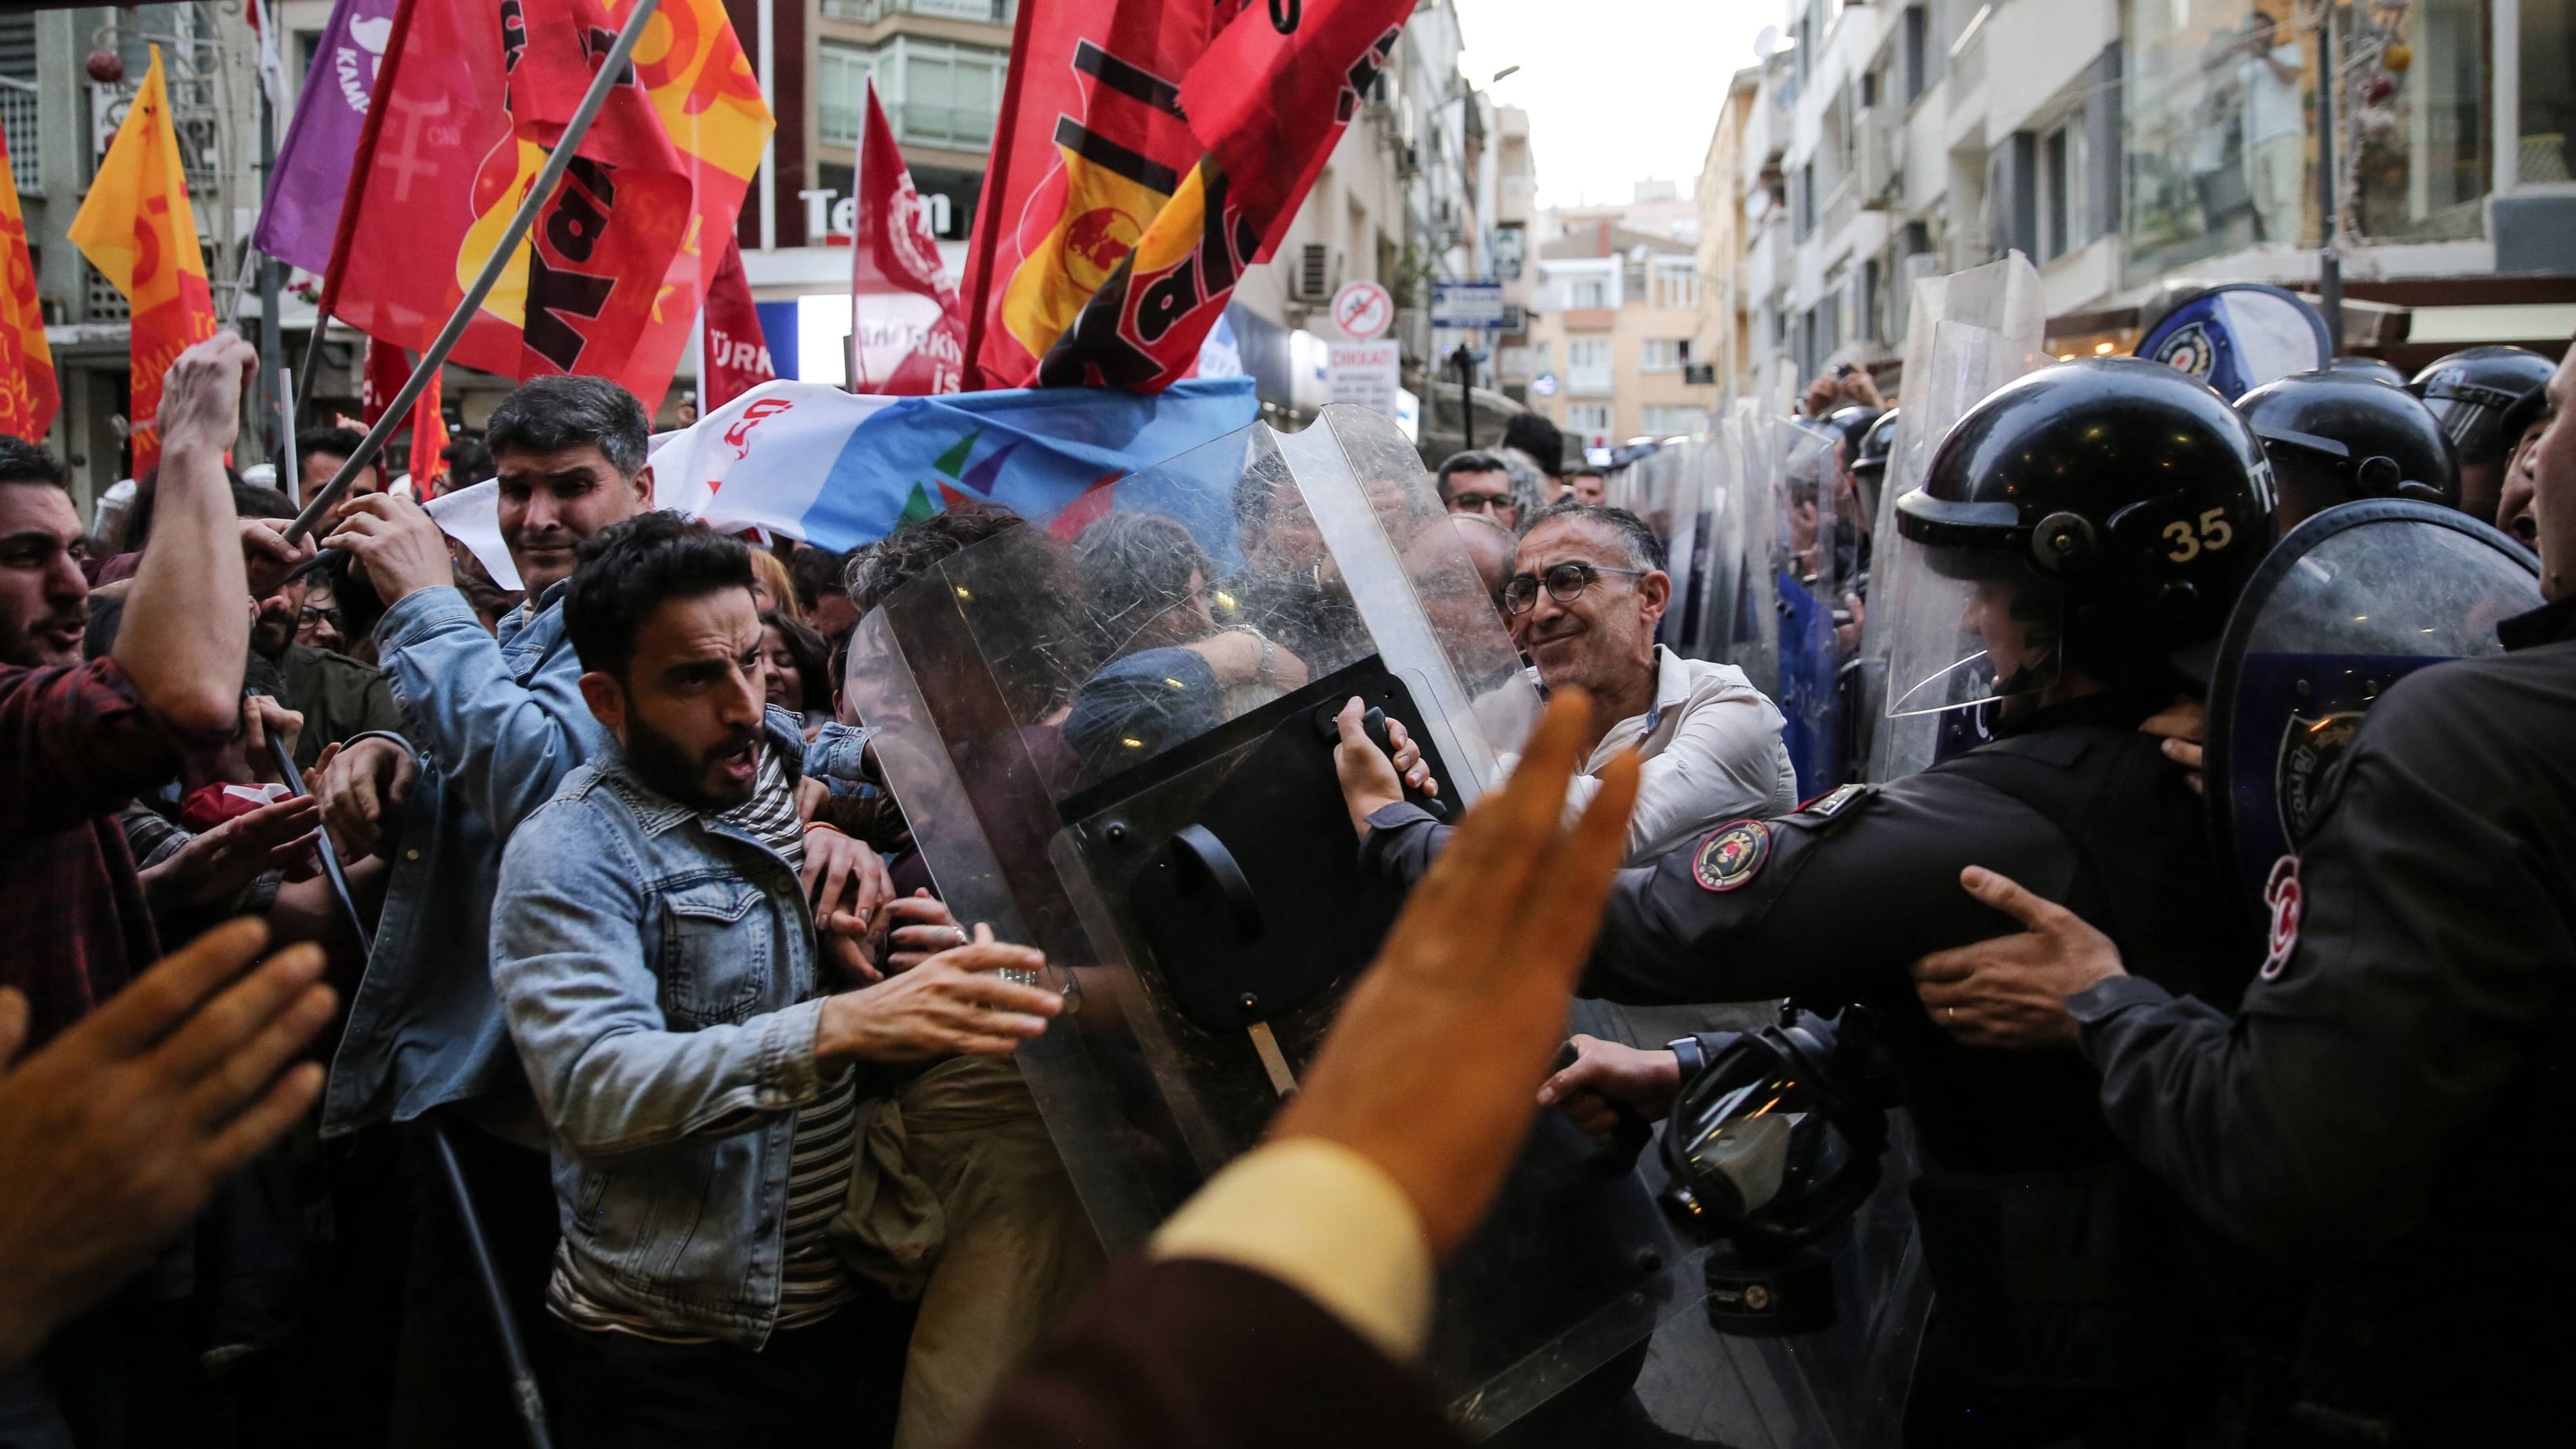 Kommunalwahl in der Türkei: Proteste nach Ausschluss von Kandidaten